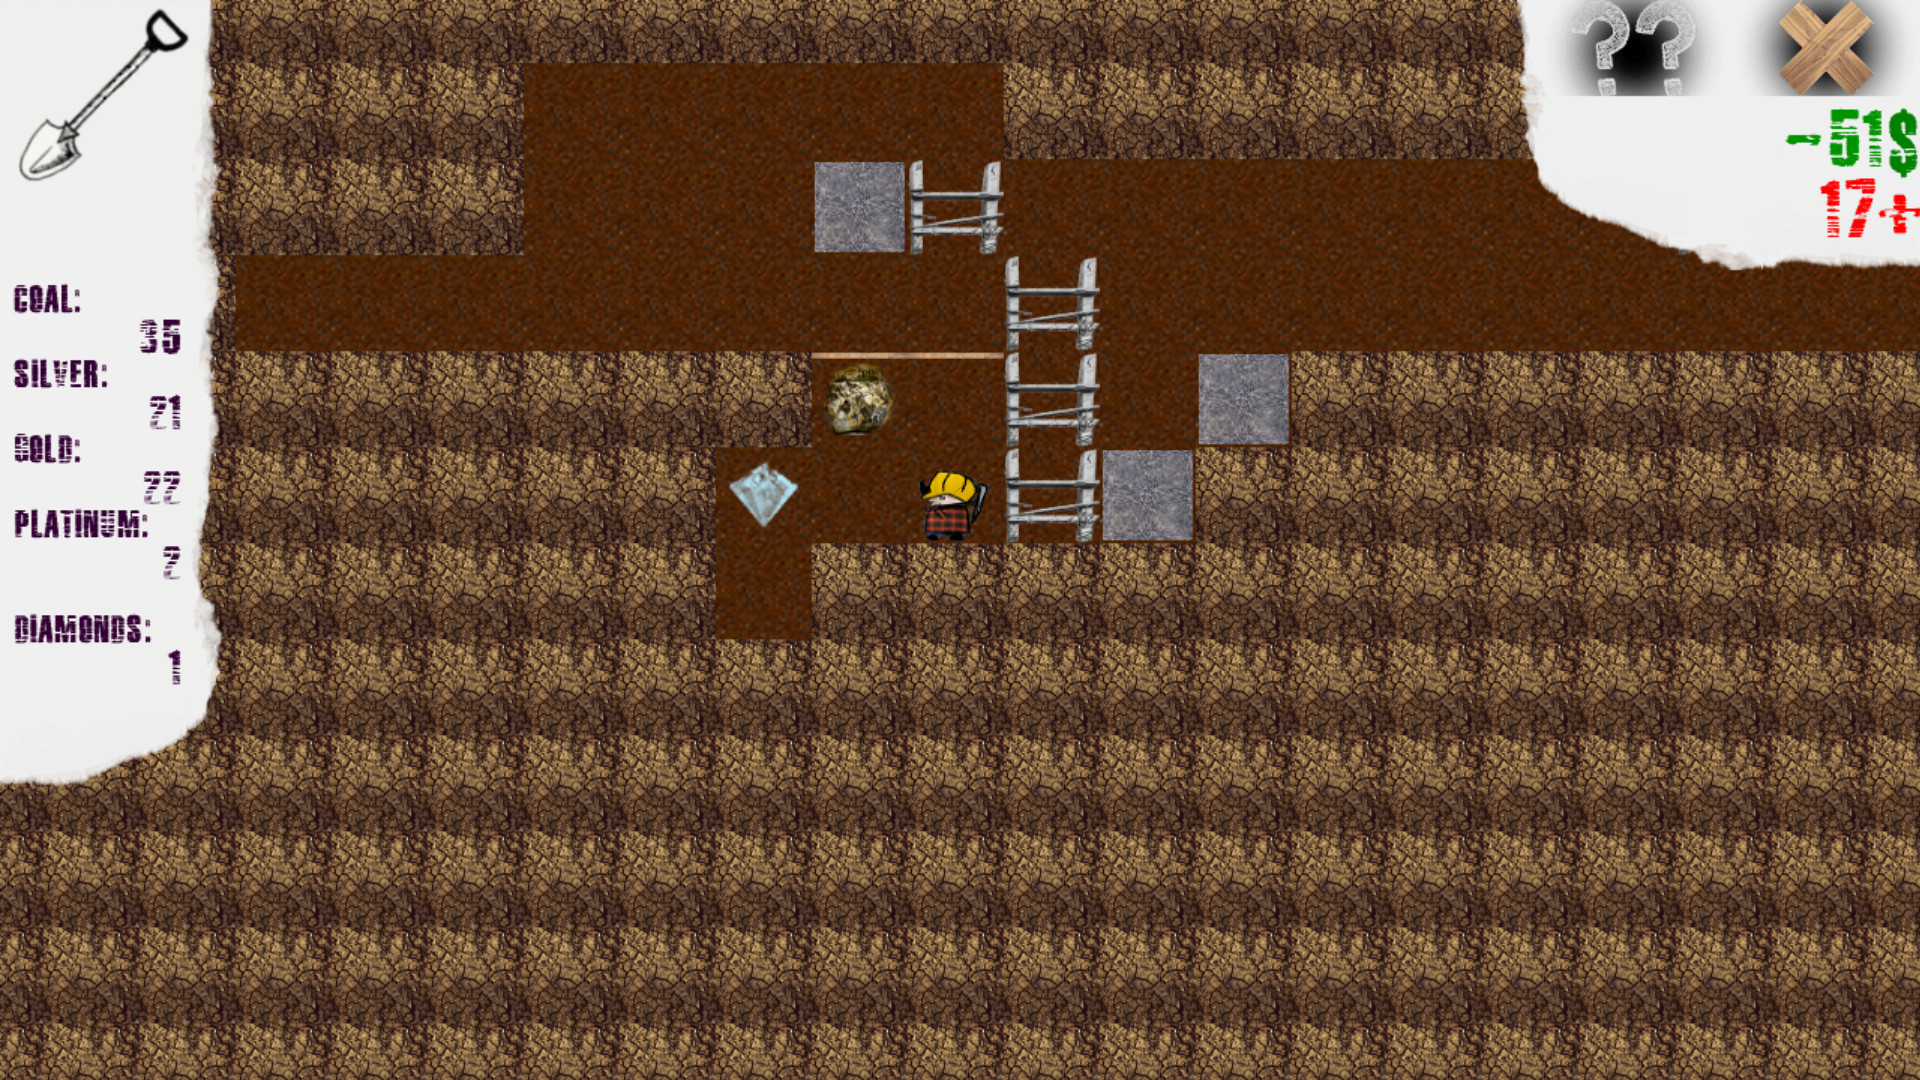 Underground Miner on Steam